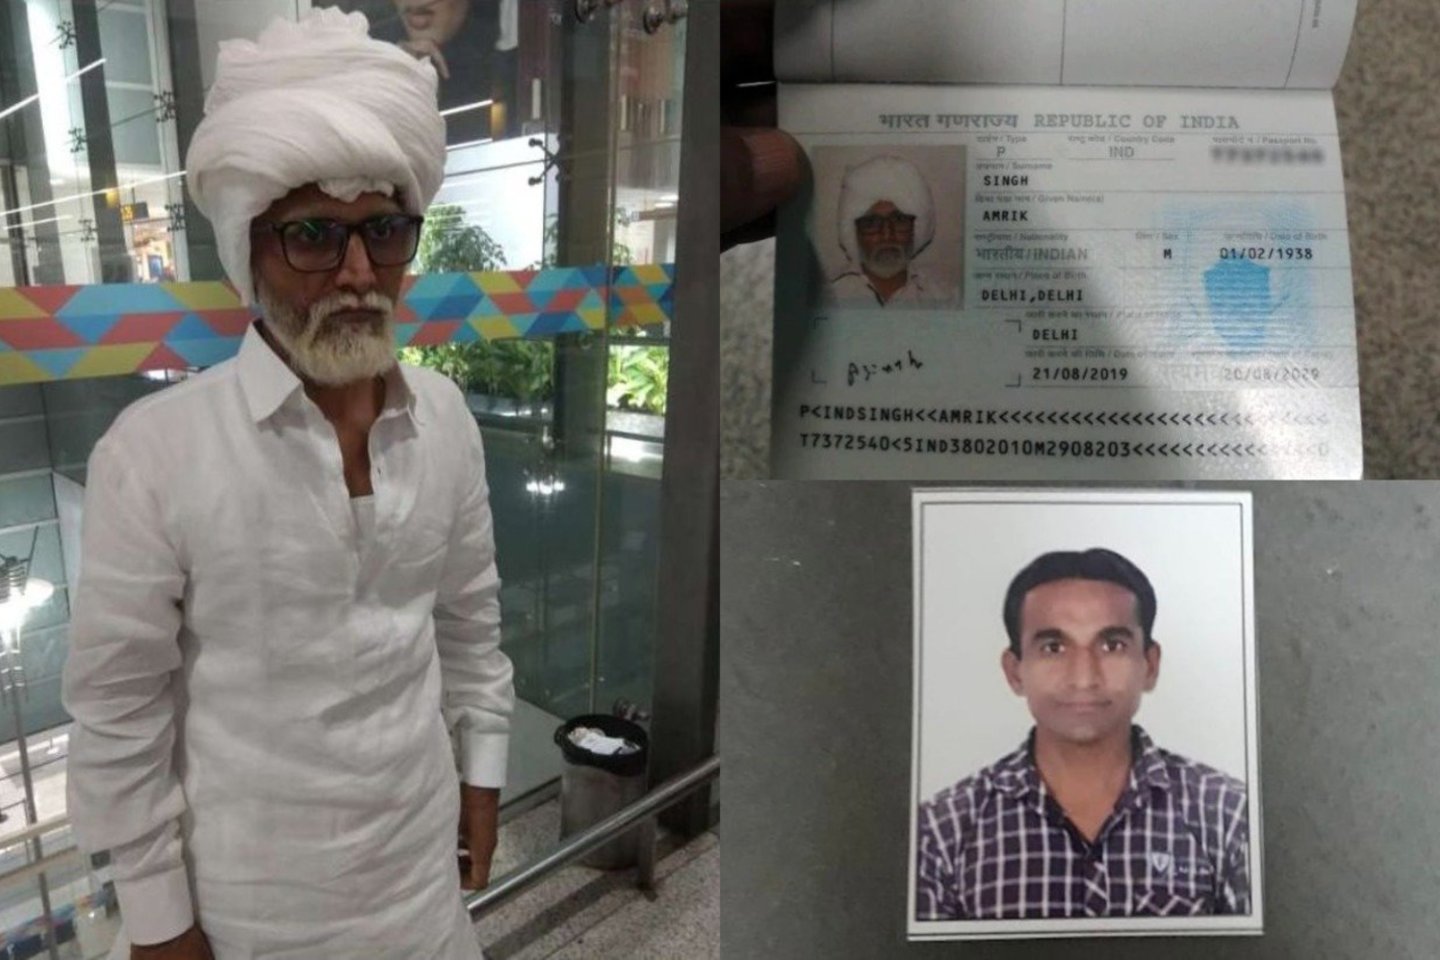  Apgauti oro uosto pareigūnų nepadėjo ir suklastotas pasas, išduotas 81 metų Amricko Singho vardu.<br> Lrytas.lt koliažas